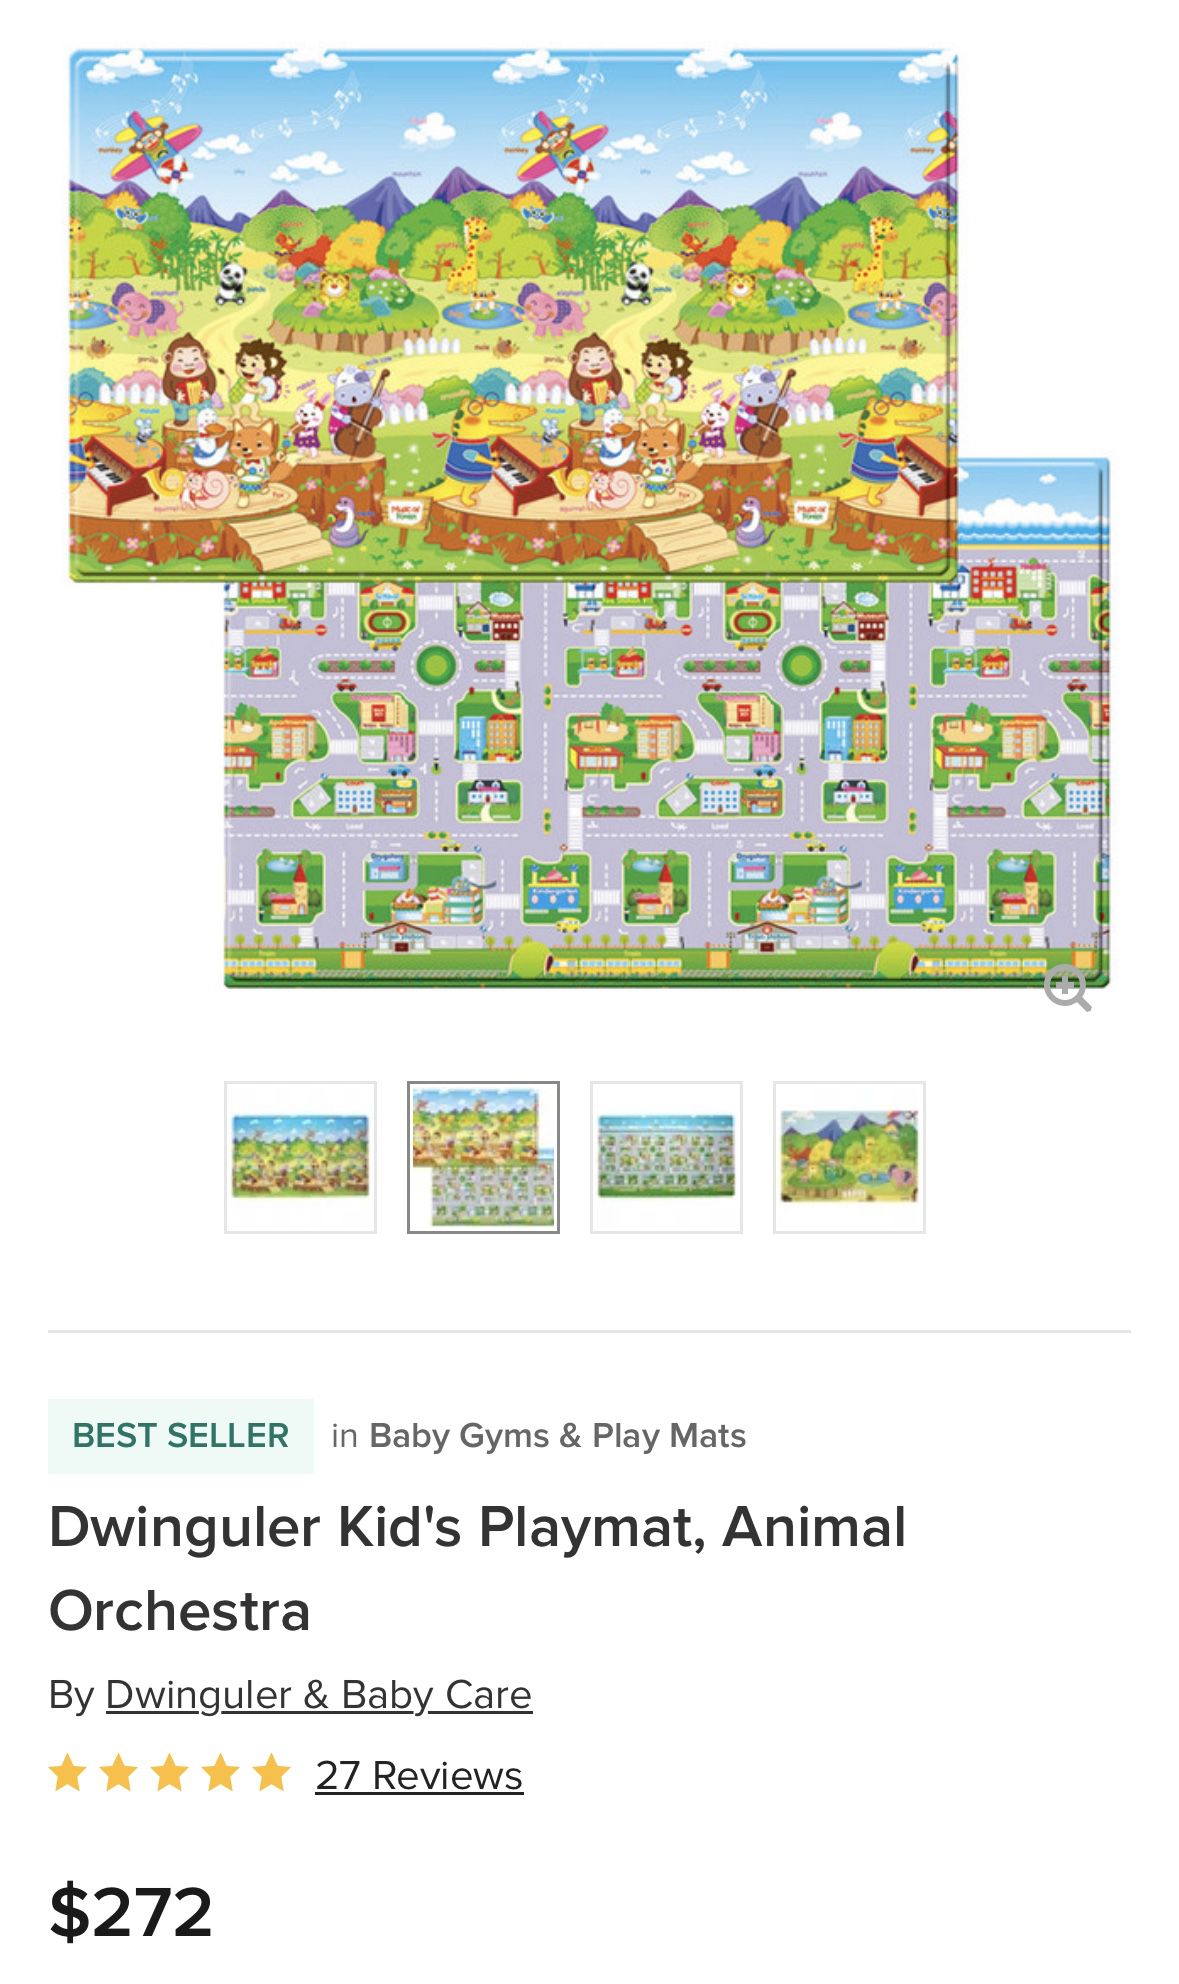 Dwinguler Kids Playmat